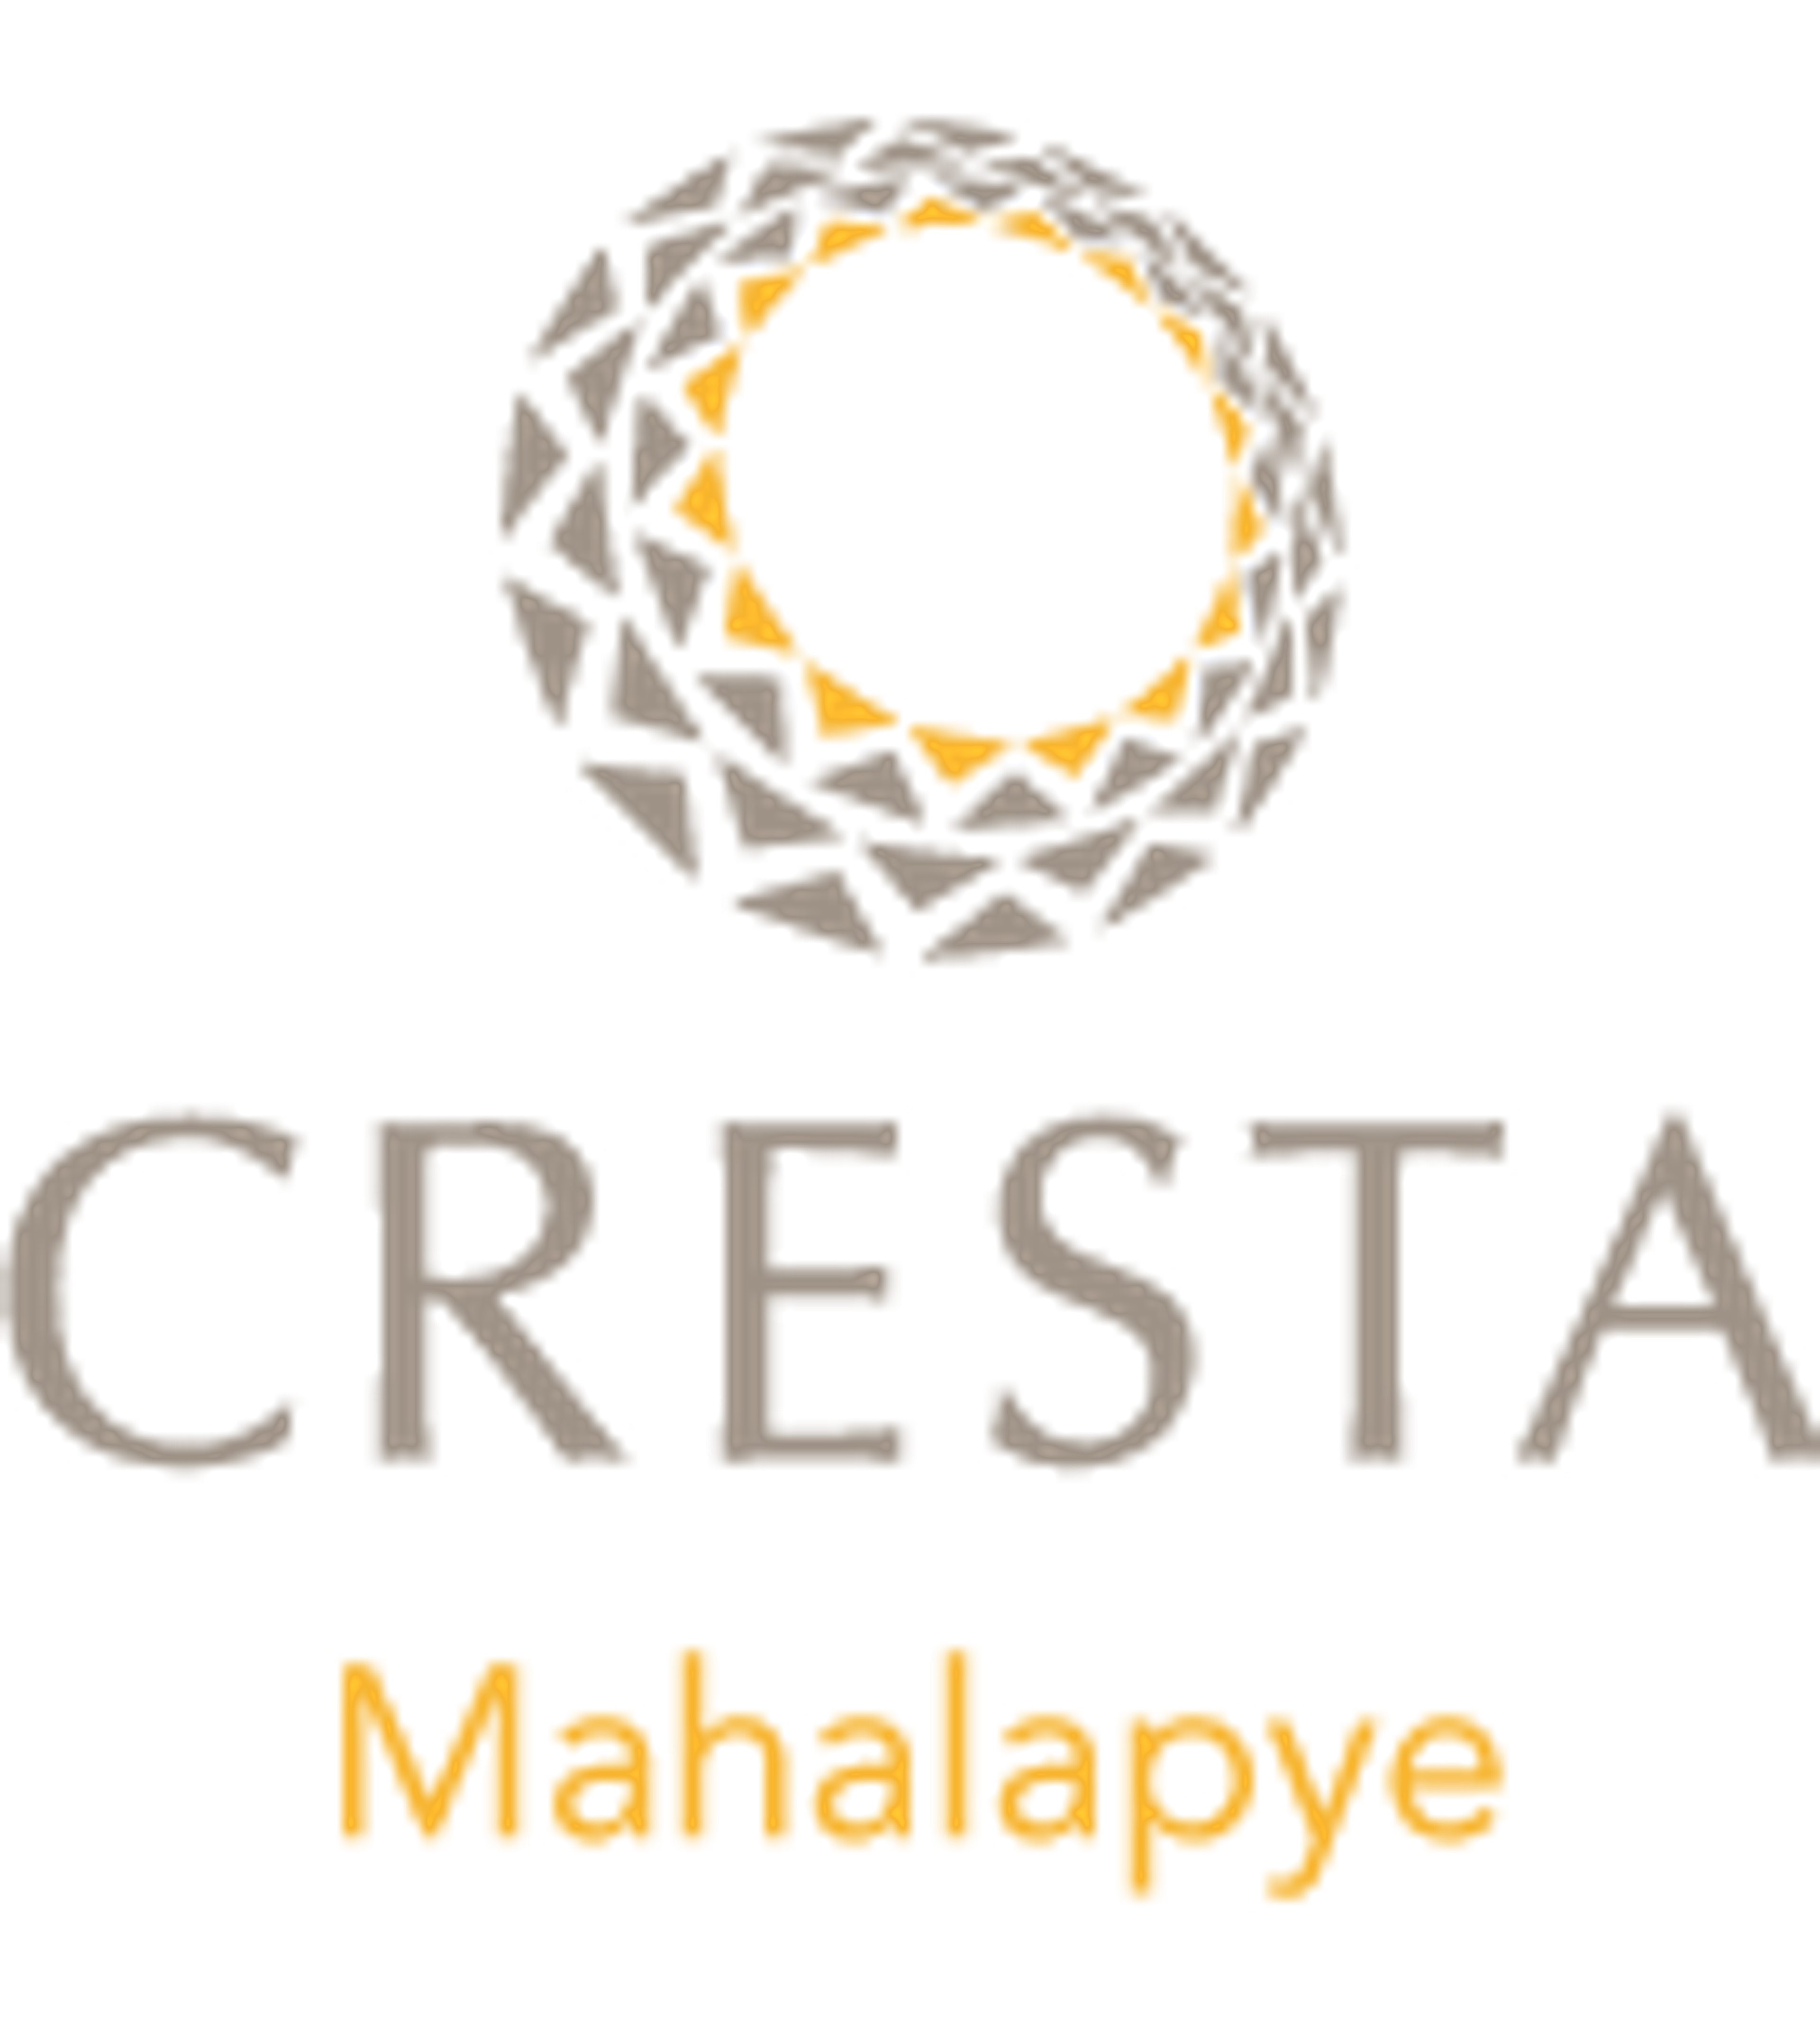 Small Logos For Cresta Mahalapye